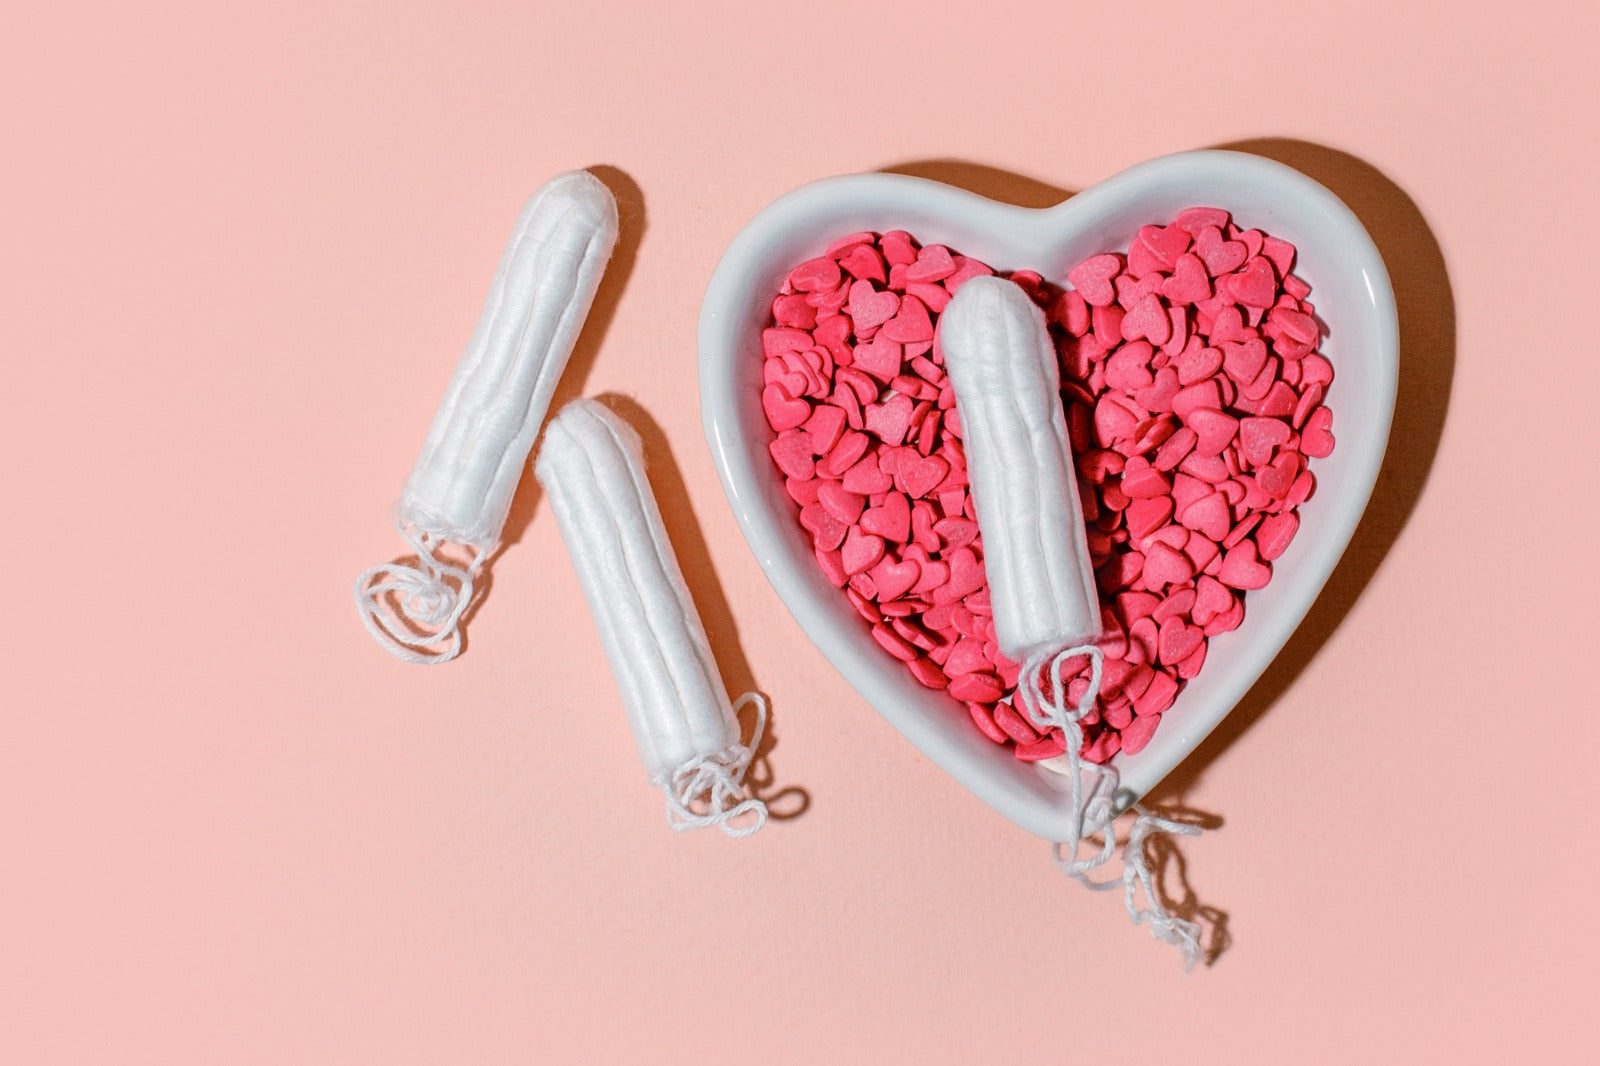 Tampon Organik vs Non-Organik: Membuat Pilihan yang Tepat untuk Kesehatan Menstruasi